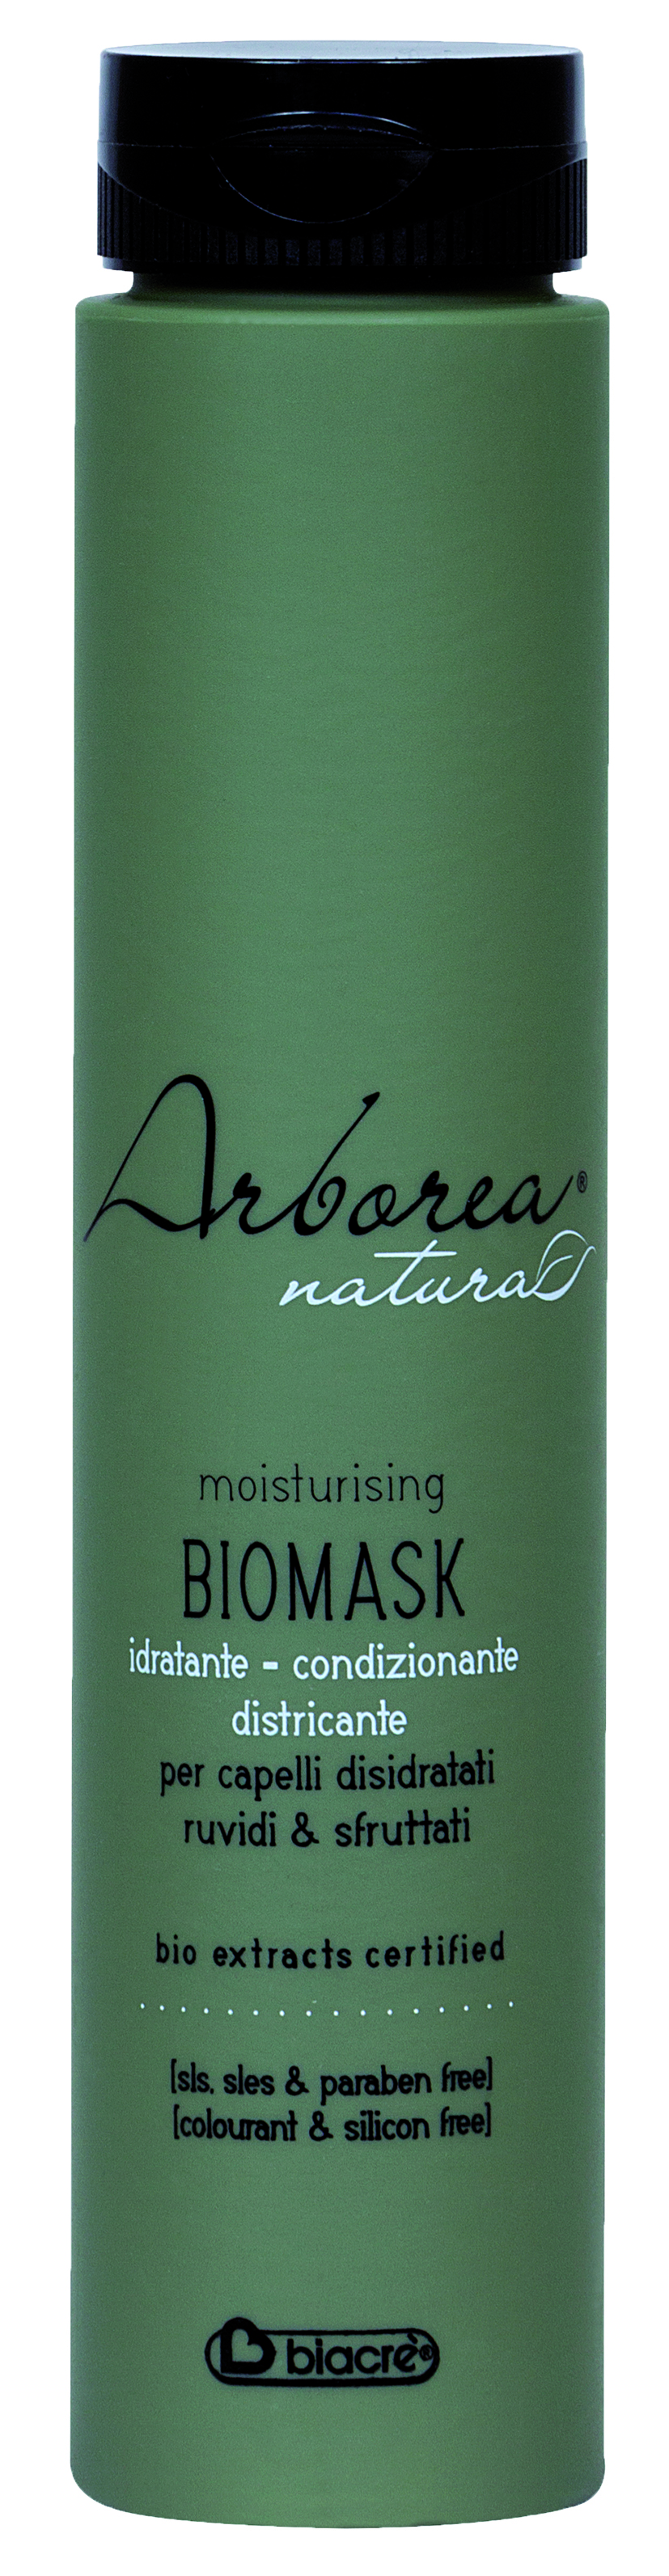 Arborea Bio-Maske